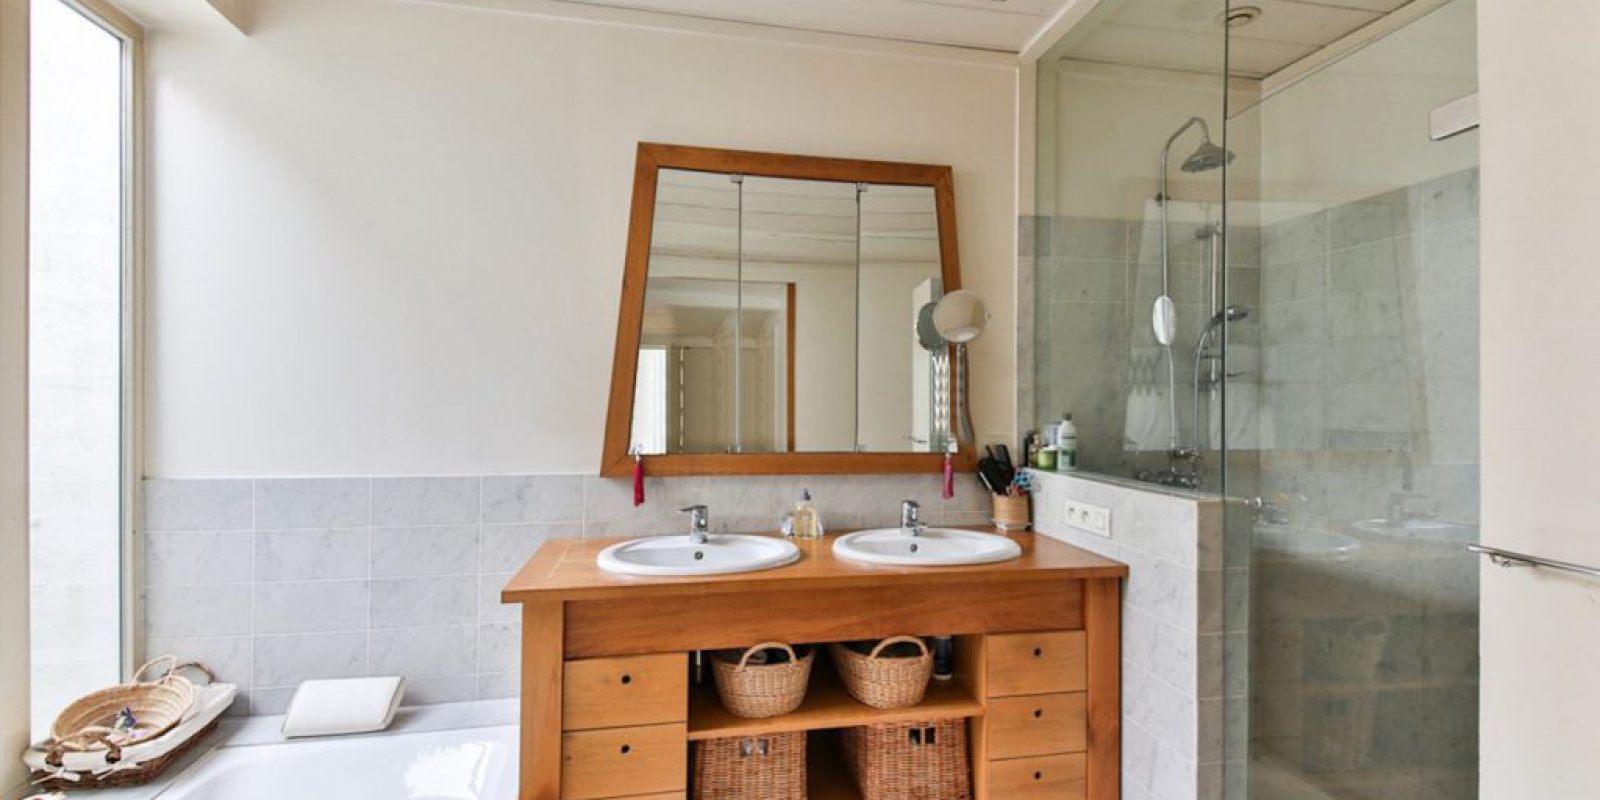 Nowoczesna łazienka - stwórz oazę luksusu i designu w Twoim domu!